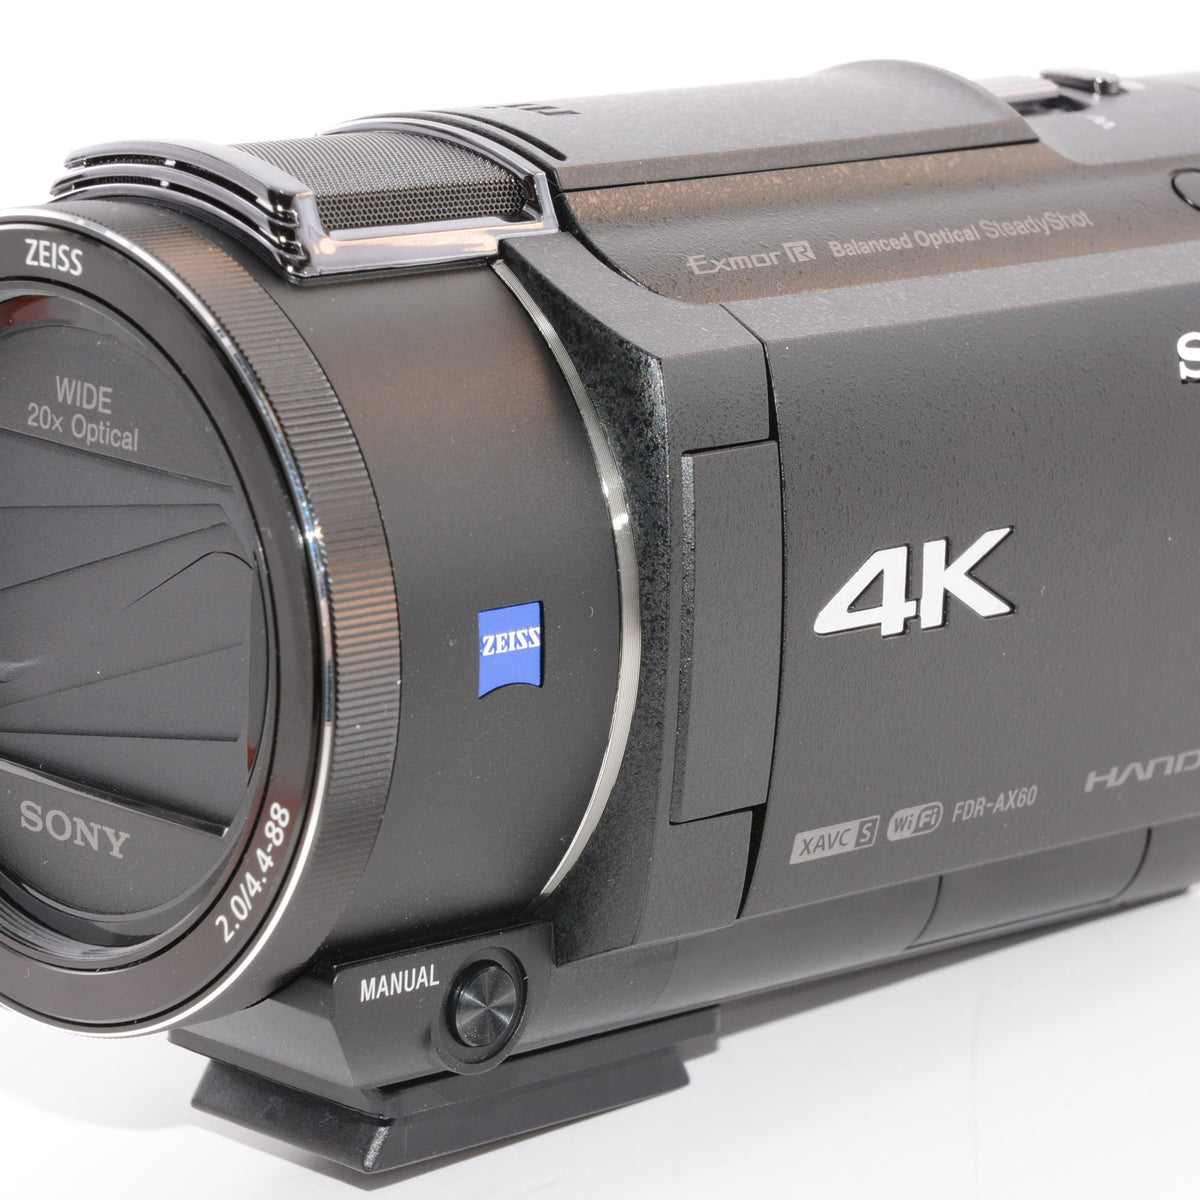 ご了承くださいソニー 4K ビデオカメラ Handycam FDR-AX60 ブラック